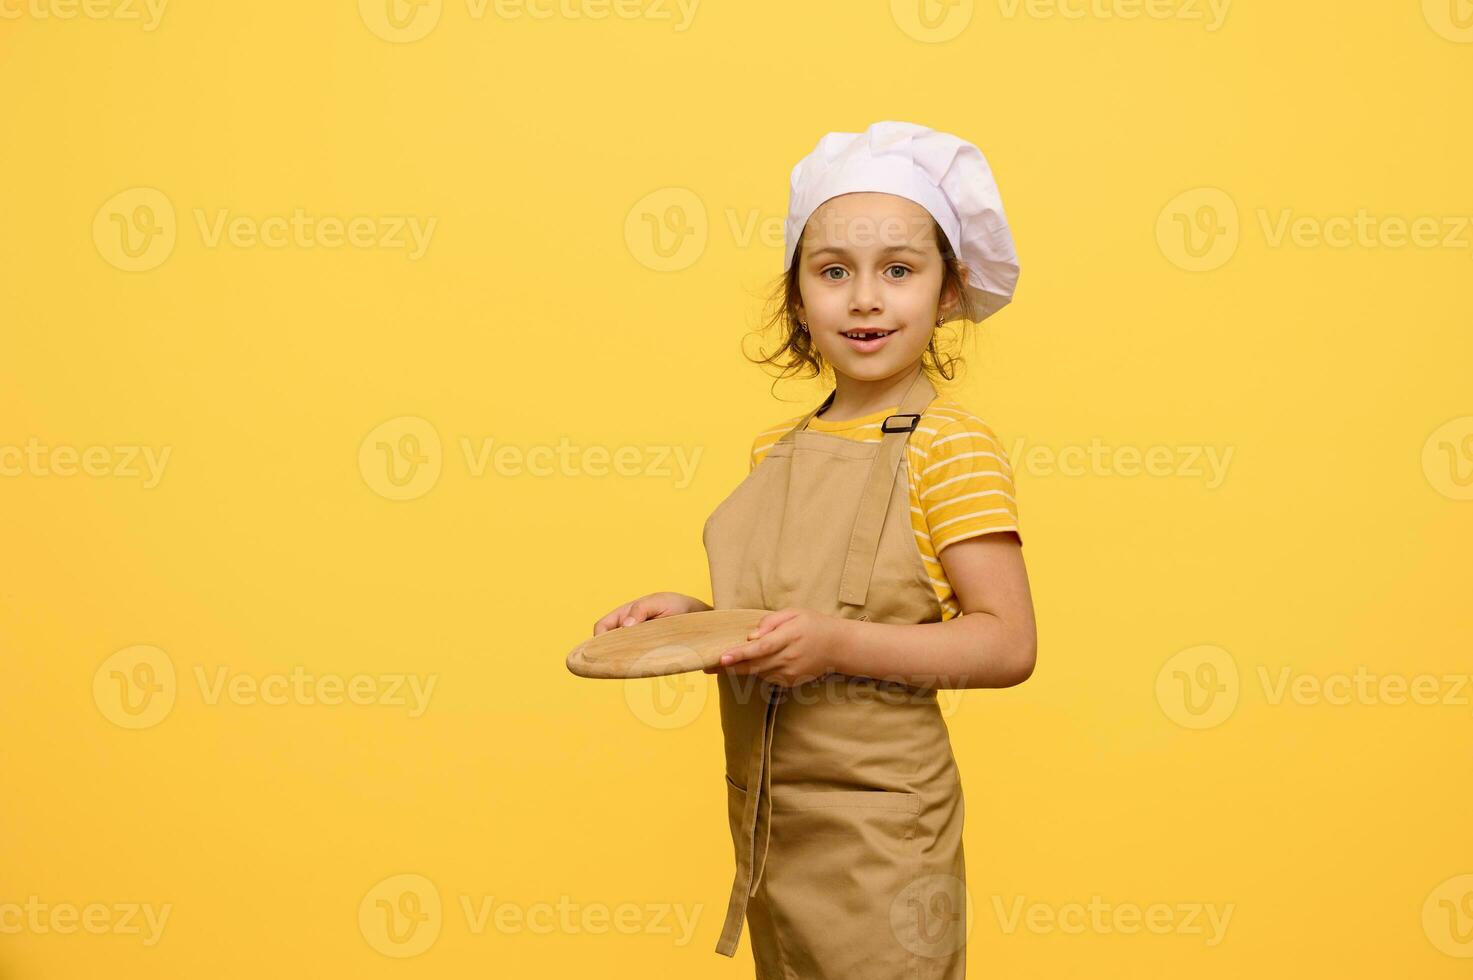 adorable niño Chica de escuela vestido como cocinero confitero, sostiene un de madera junta, sonrisas mirando a cámara, aislado en amarillo foto